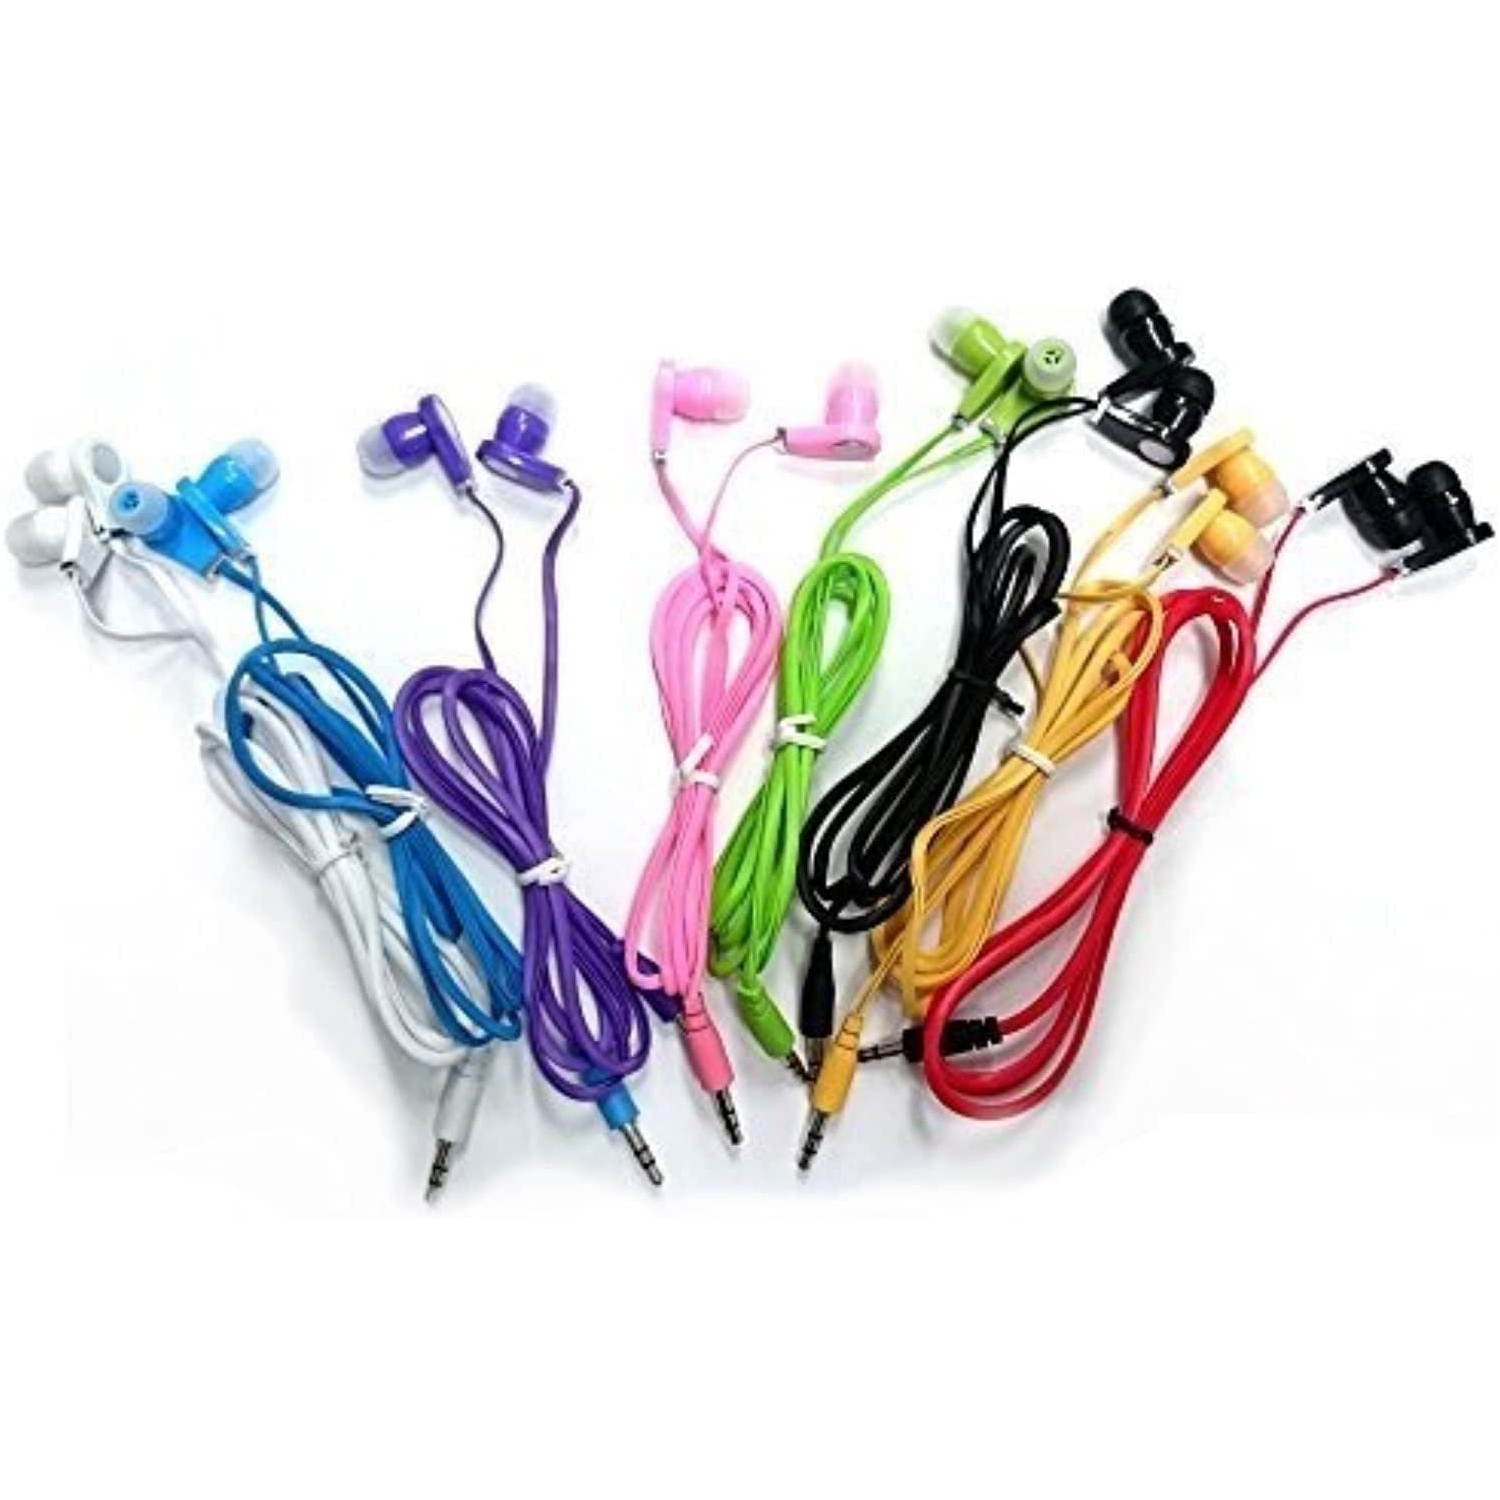 JustJamz 10 Pack 3.5mm Stereo in-Ear Bulk Earbuds Headphones Wholesale Earphones (Assorted Colors)